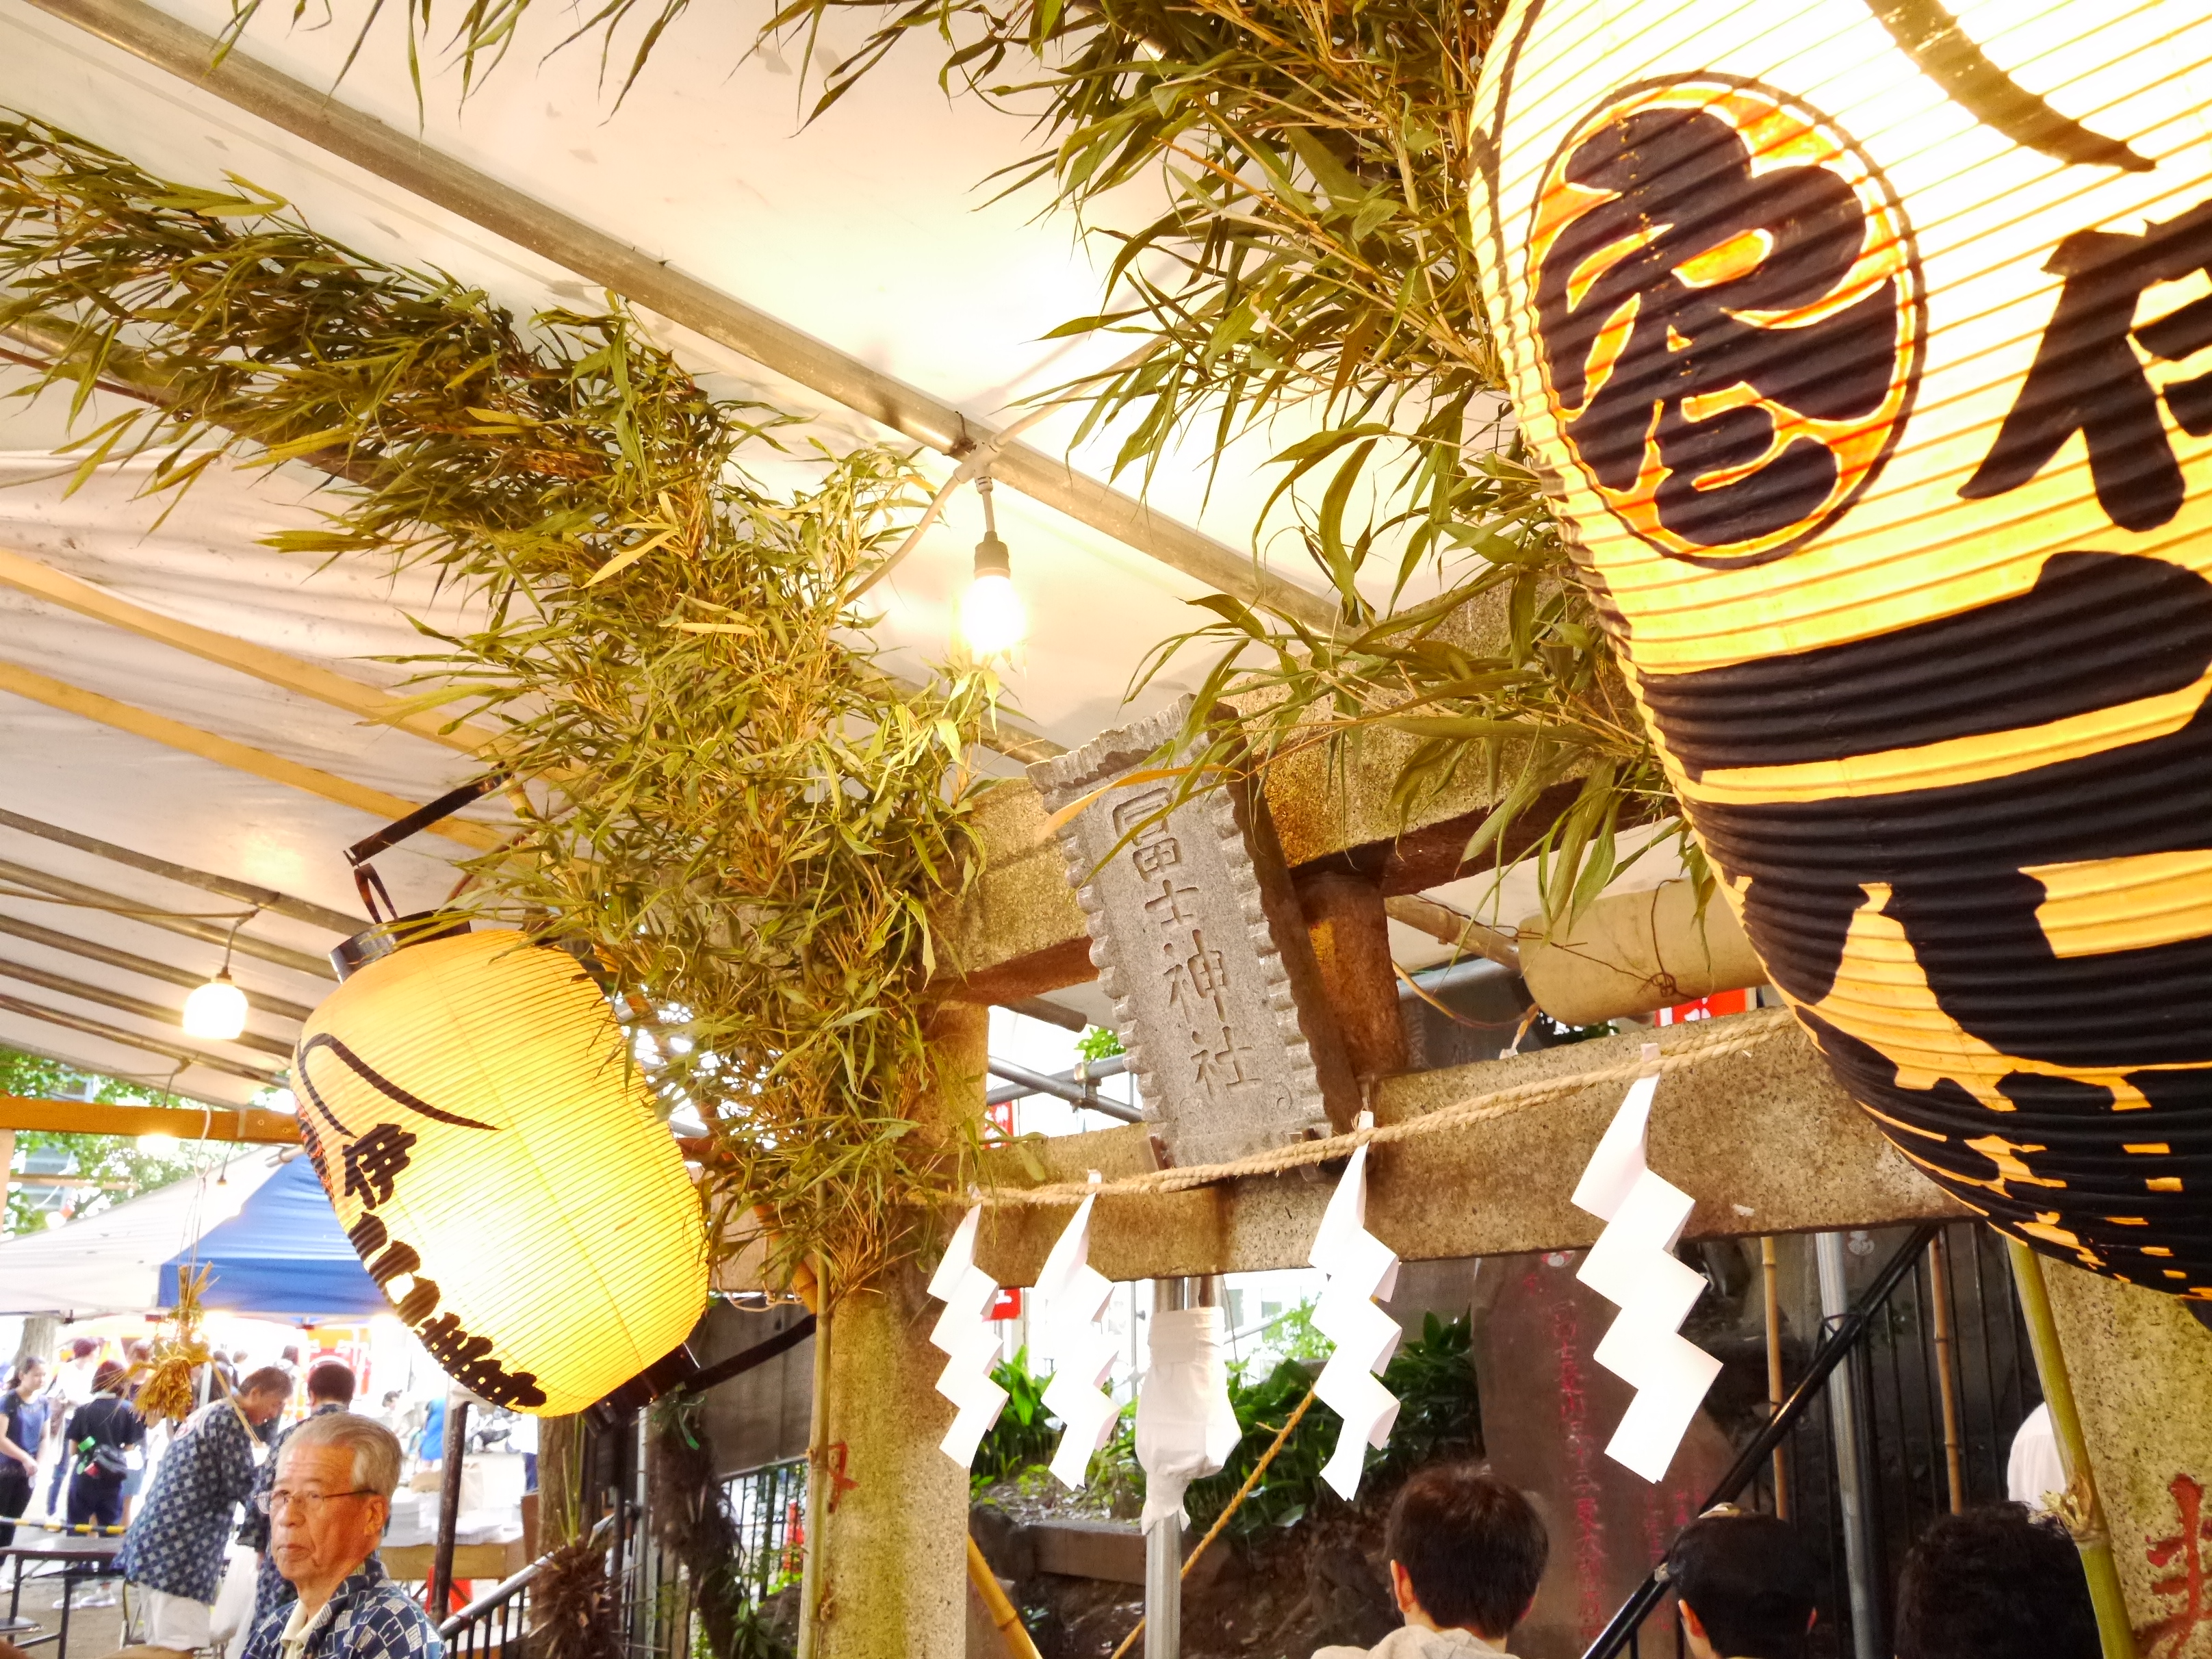 東京都北区のお祭り「お富士さん」に行ってみました